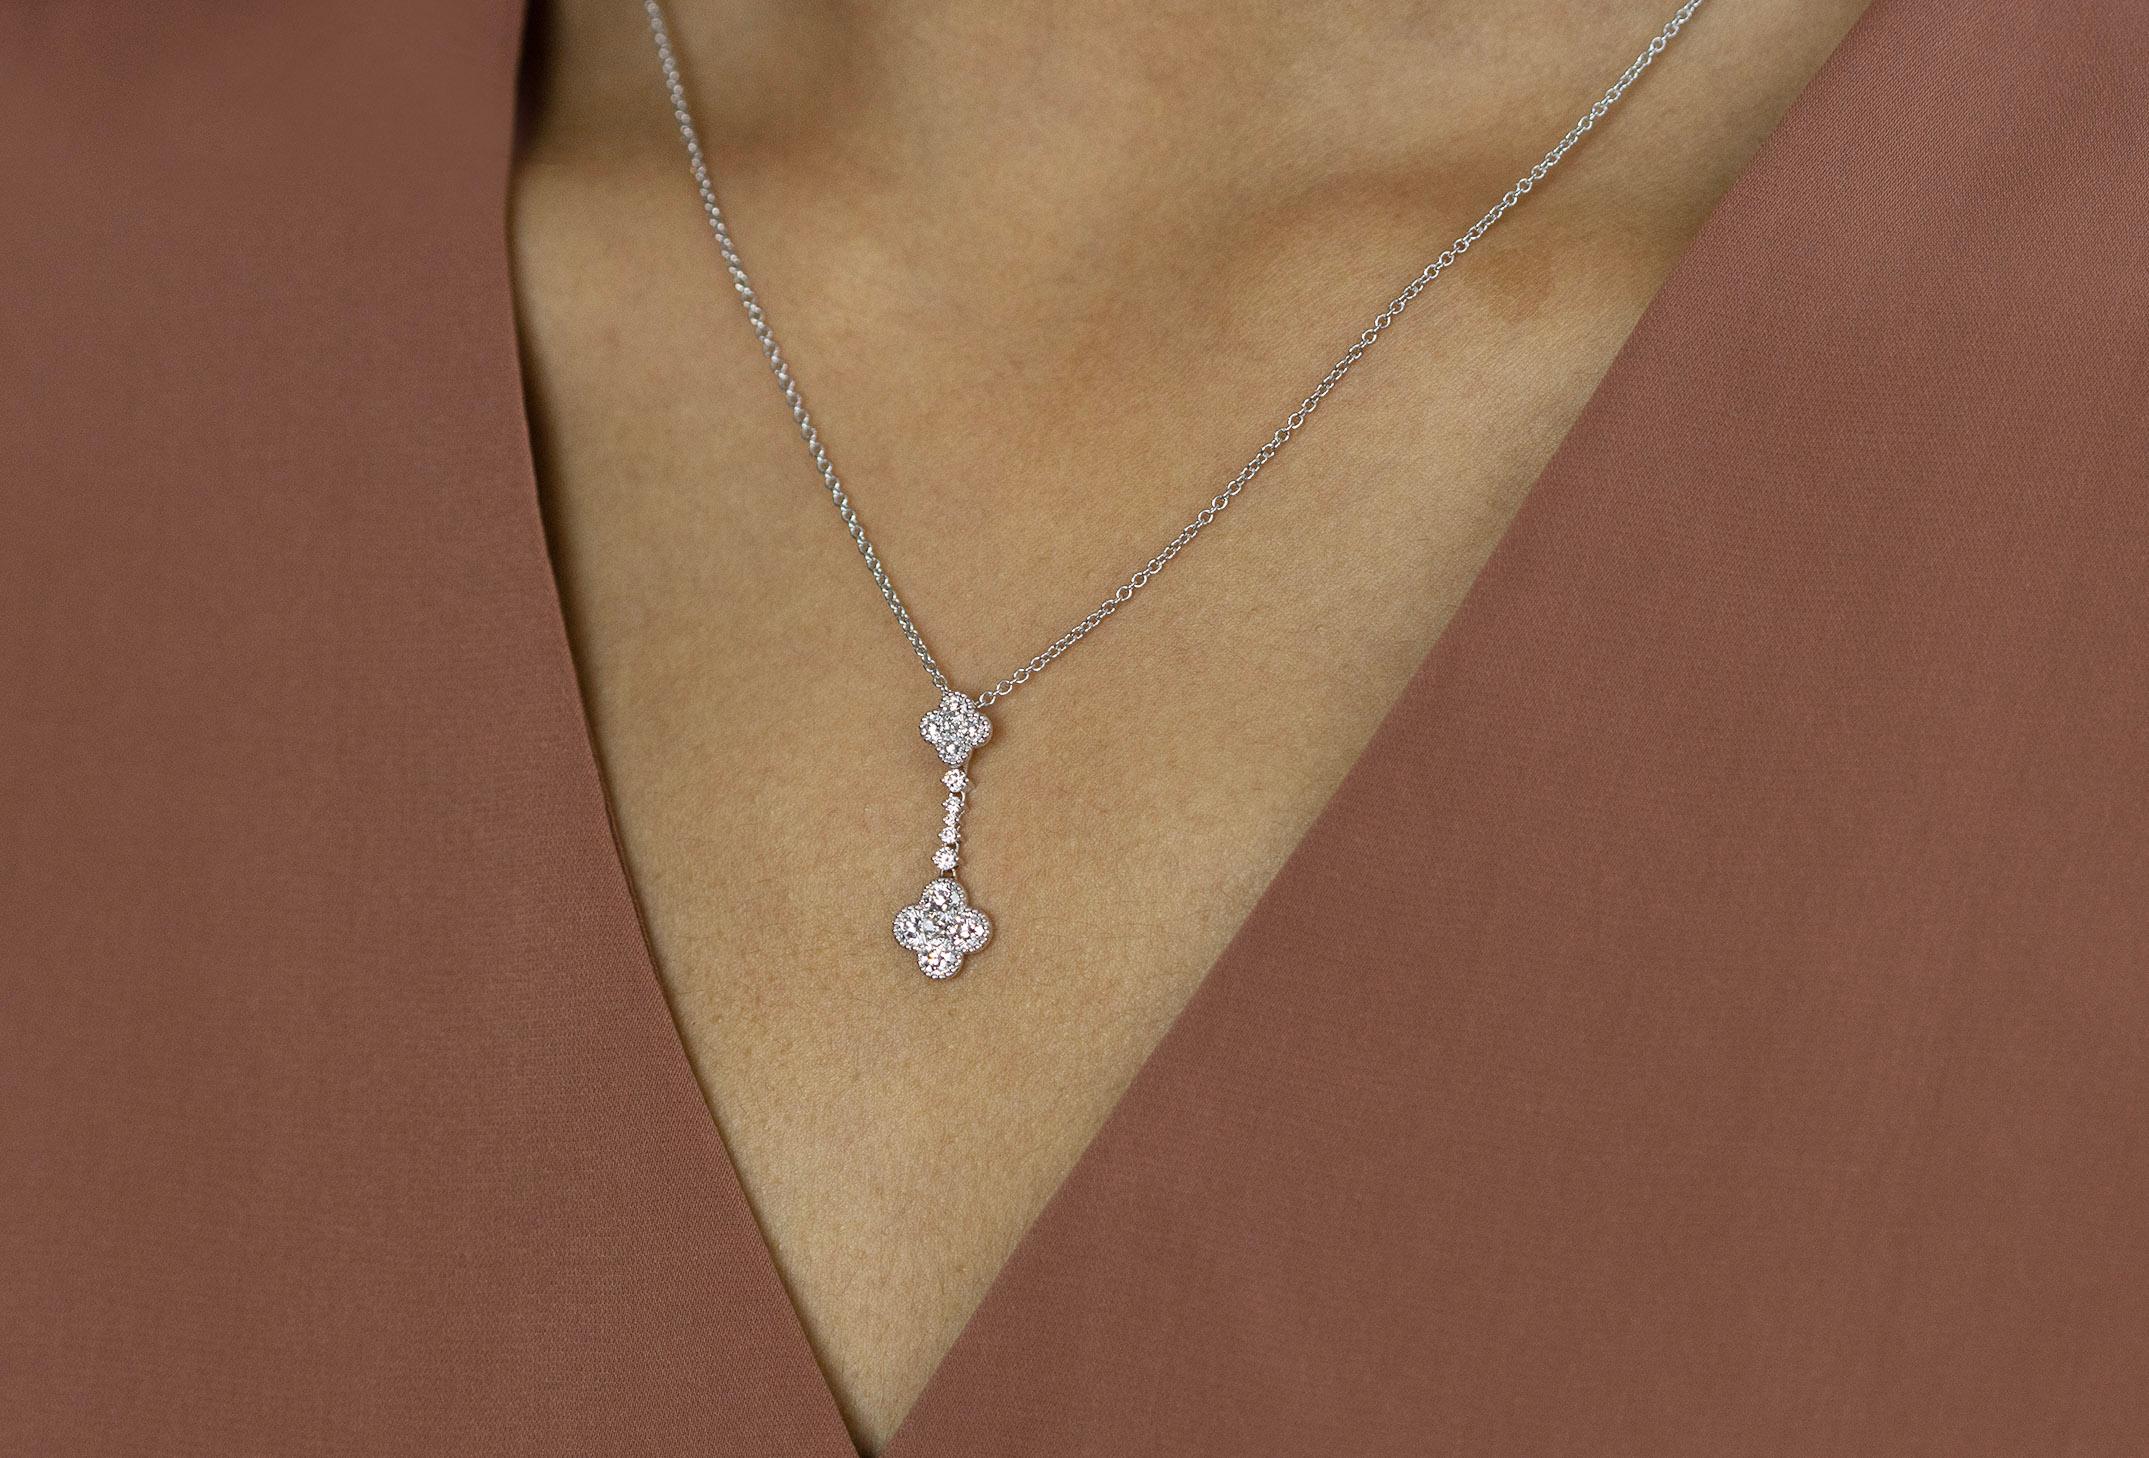 Women's Flower Pendant Necklace 0.98 Carats Total Round Cut Diamond Drop